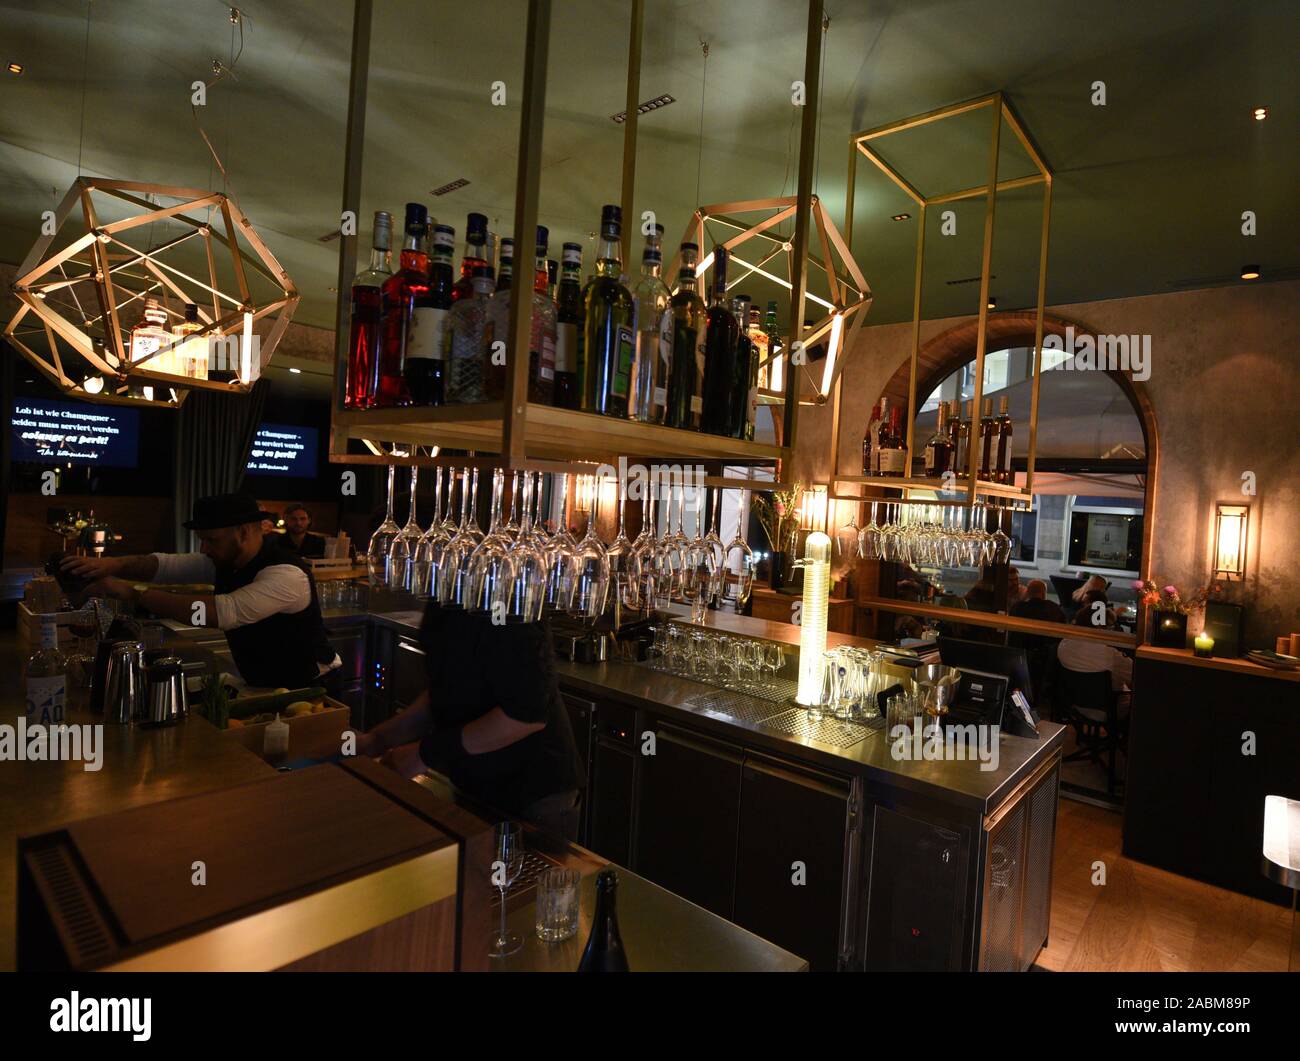 Dans le 'Kubaschewski' sur la Karlsplatz, champagne et Schmarrn sont servis. Le bar est nommé d'après la légende du cinéma et de célébration, dont le Gloriabälle Kubaschewski ilse fait l'histoire dans les années 60. [Traduction automatique] Banque D'Images